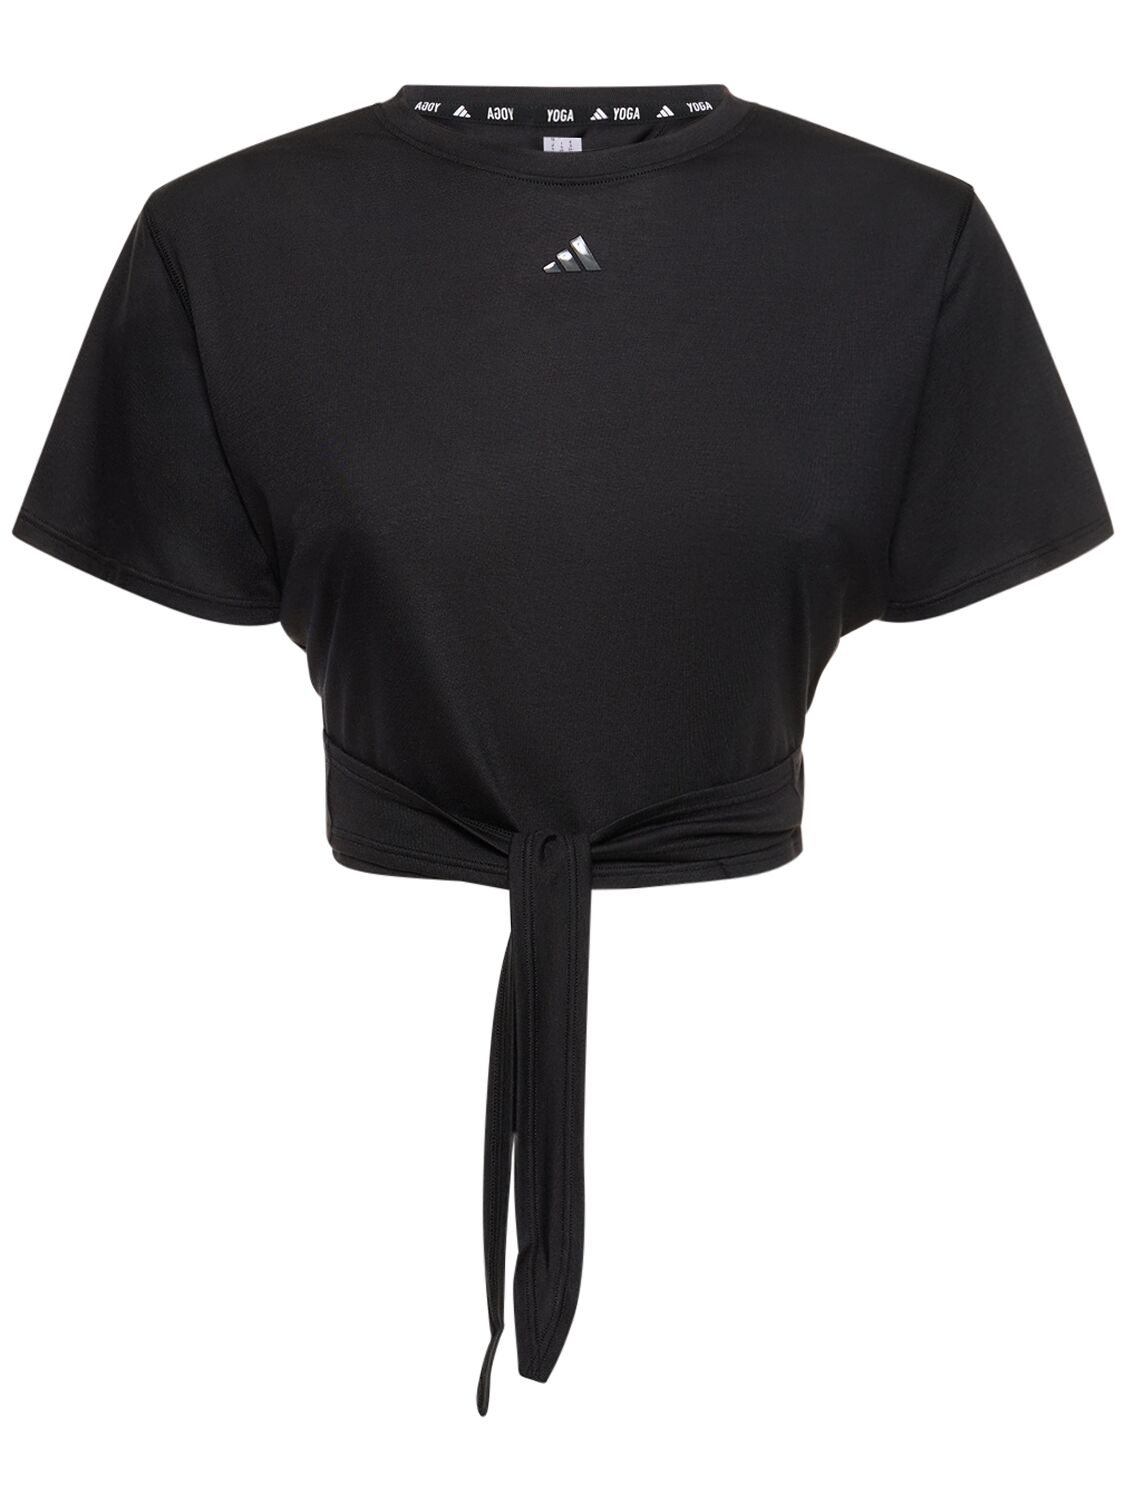 Adidas Originals Yoga Crop Top In Black